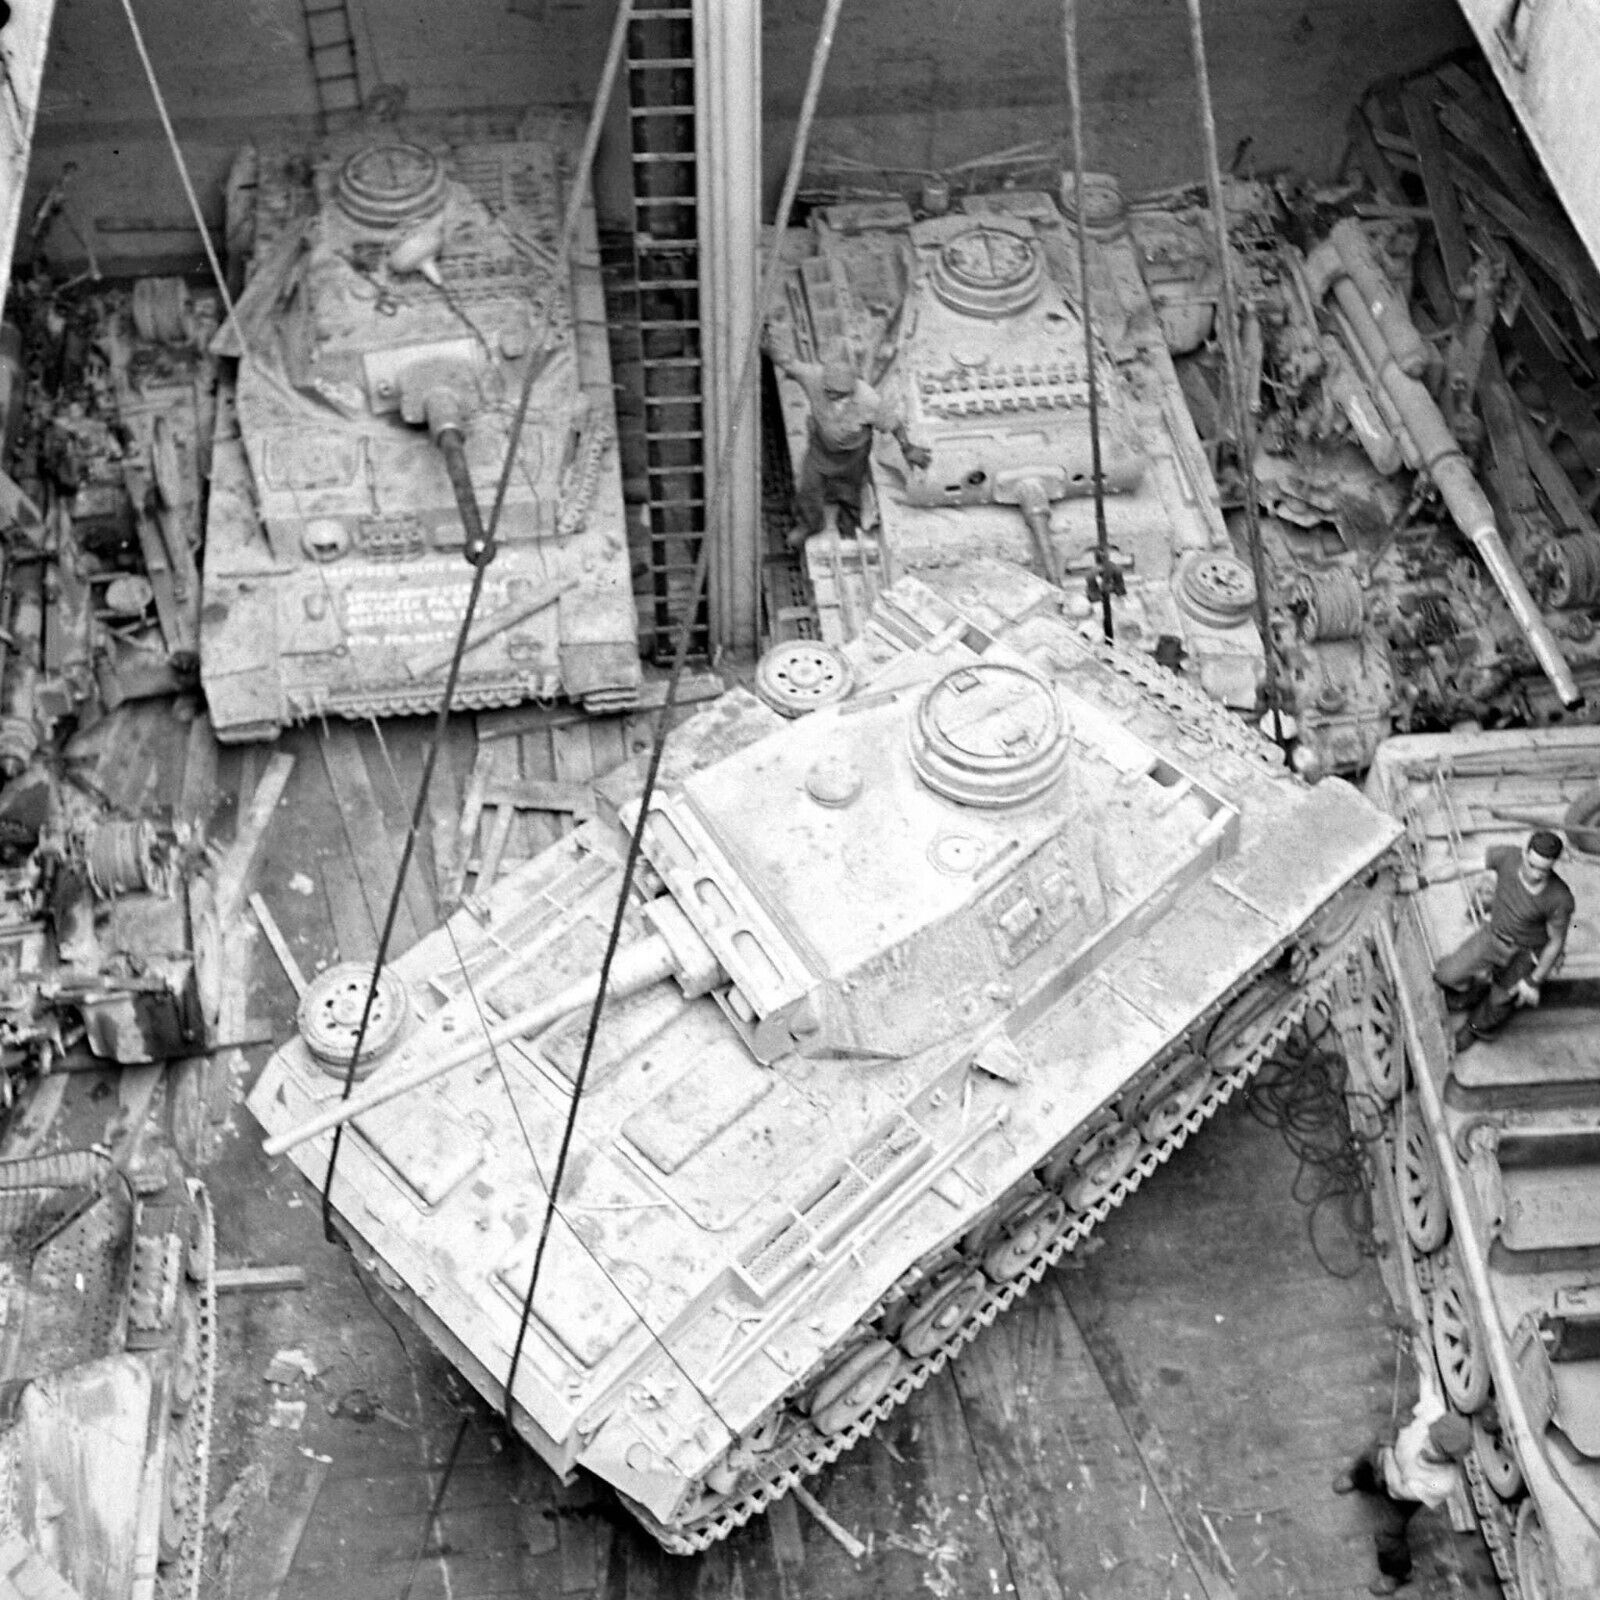 WW2 WWII Photo World War Two Captured German Panzer Tank Aberdeen Proving Ground